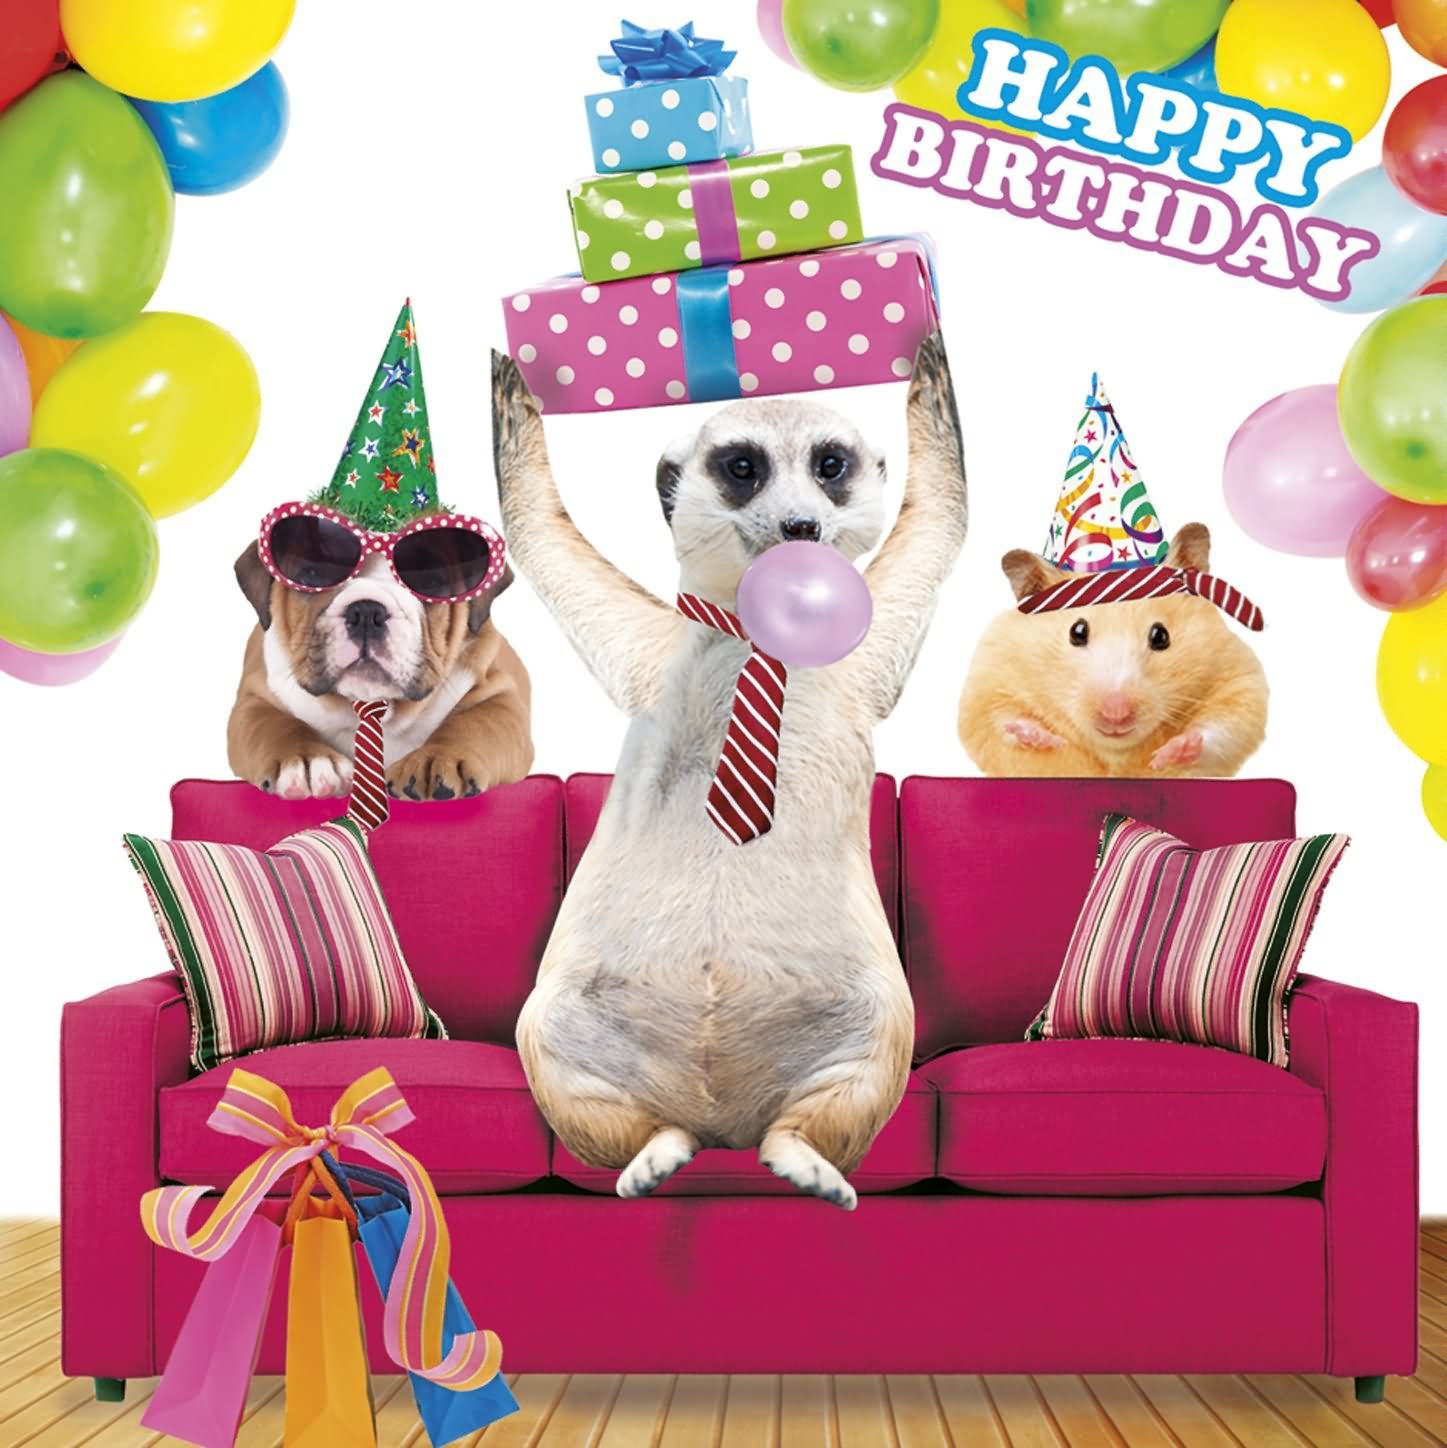 Funny Animals Celebrating Birthday